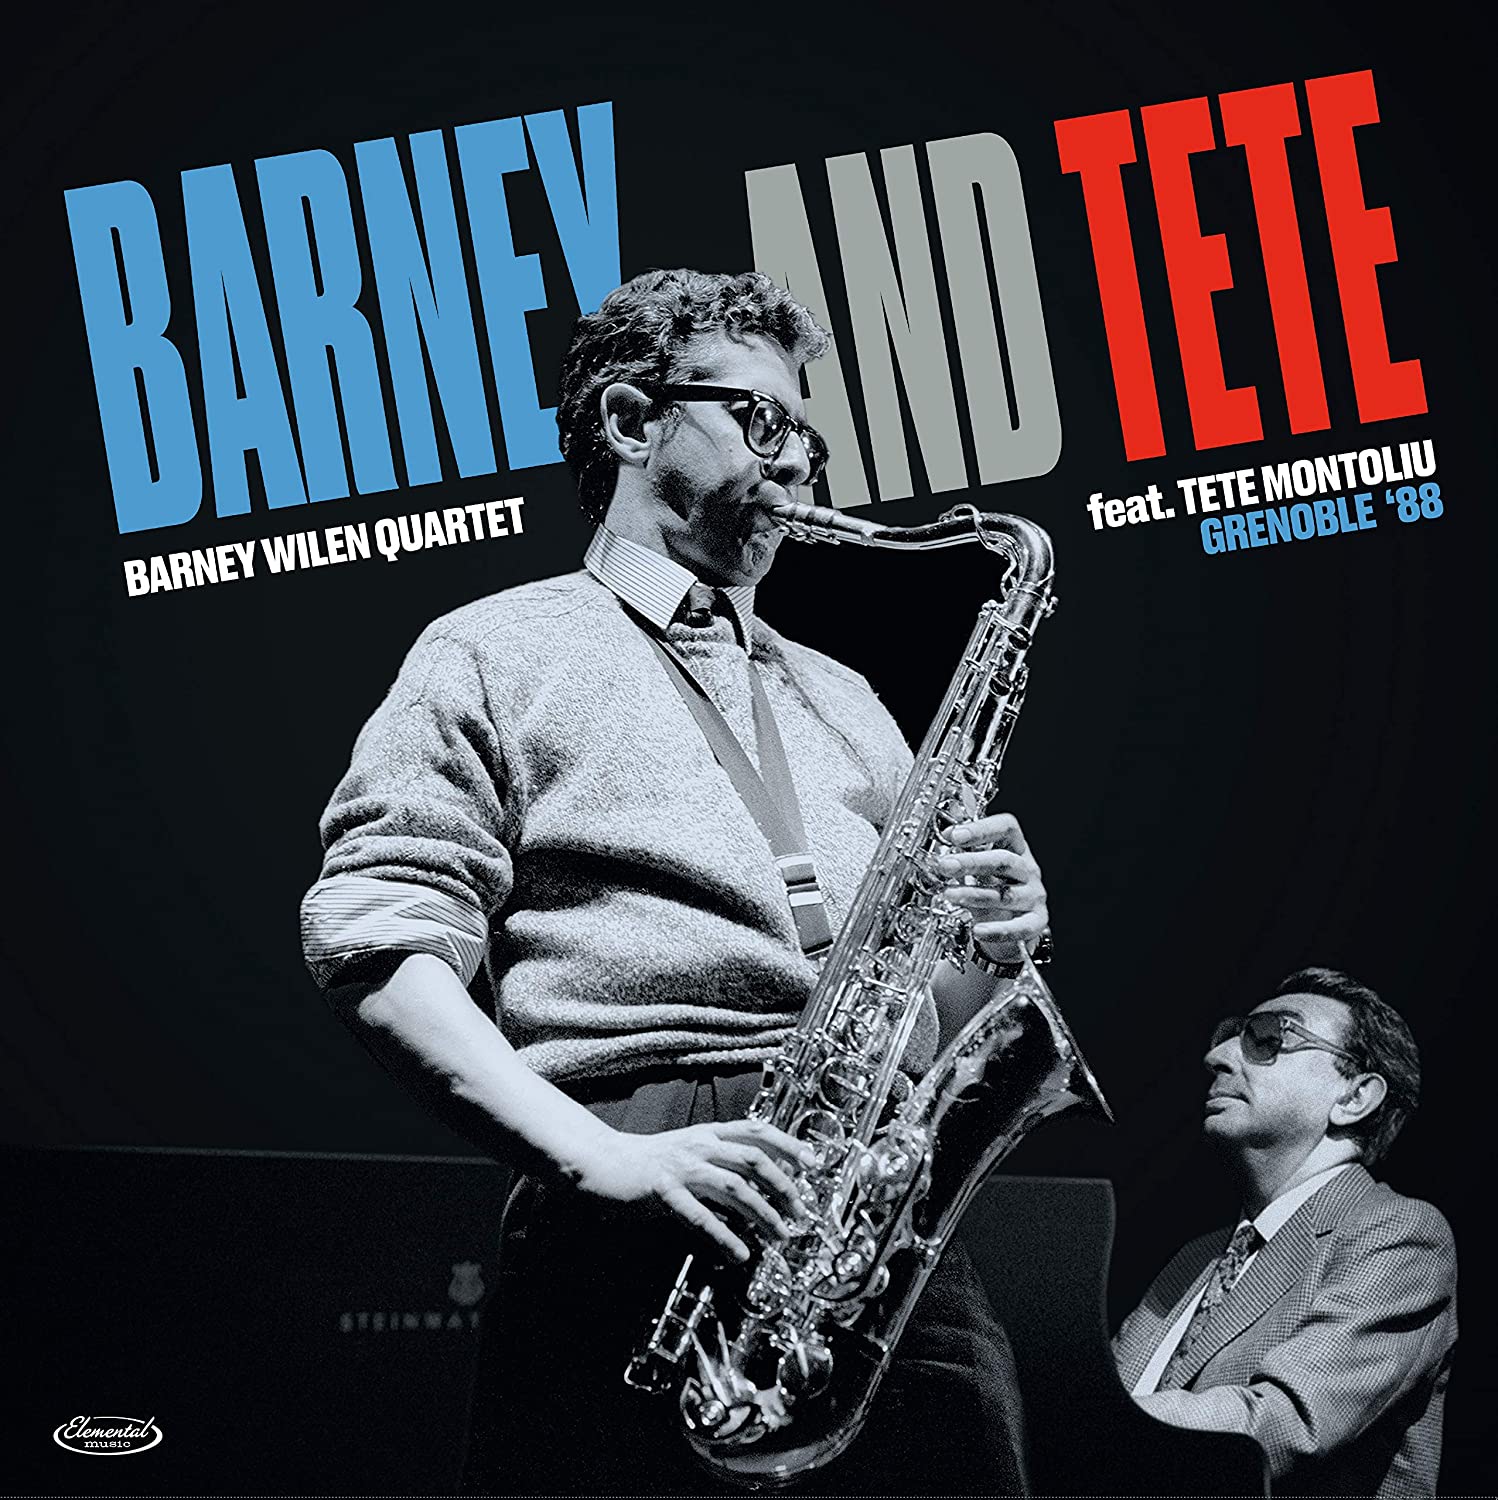 BARNEY WILEN - Barney Wilen Quartet feat. Tete Montoliu : Barney And Tete - Grenoble '88 cover 